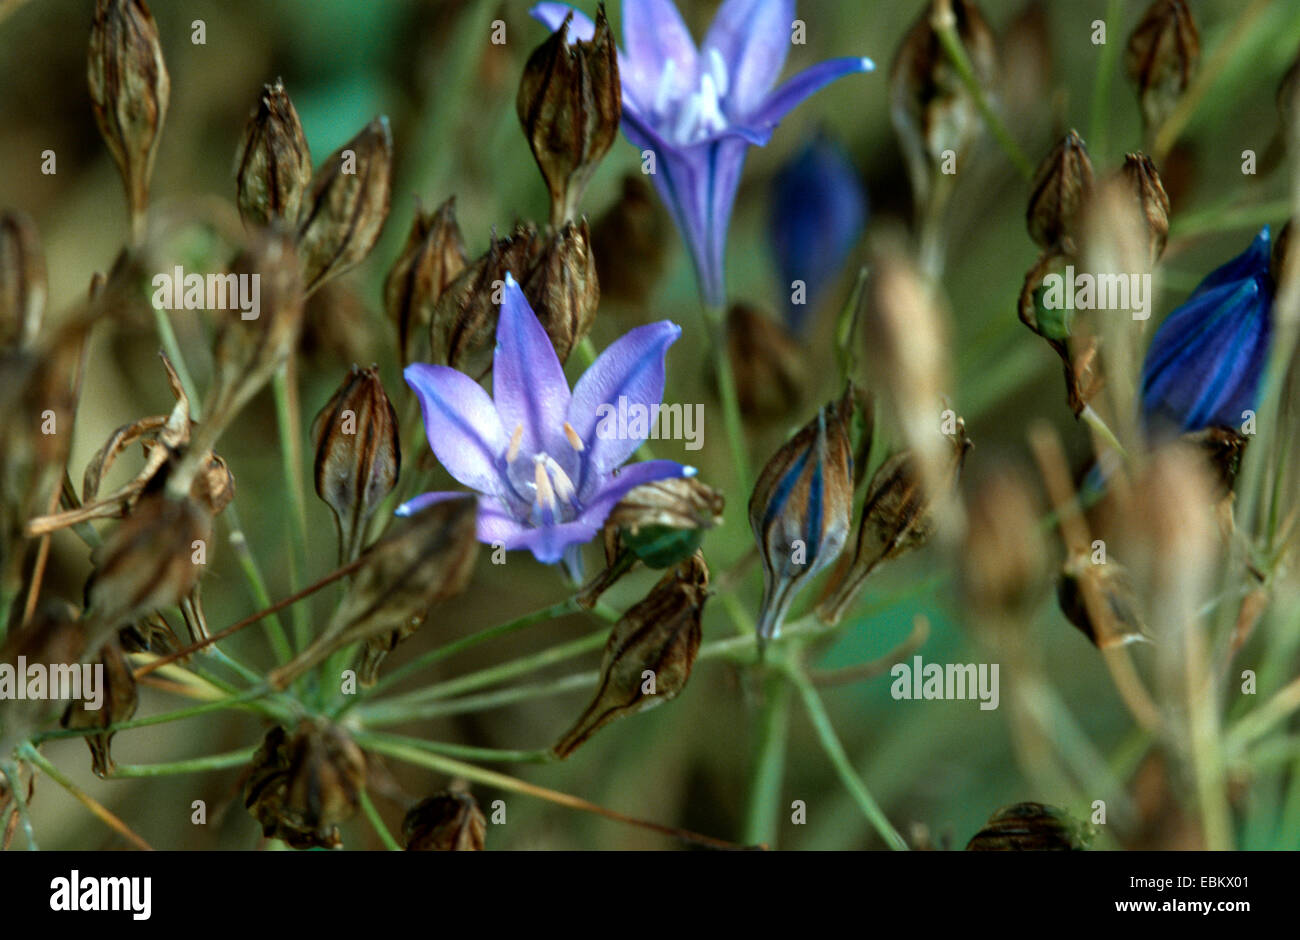 Grass nut, Triplet lily, Starflower, Wild hyacinth (Triteleia laxa, Brodiaea laxa), flower Stock Photo